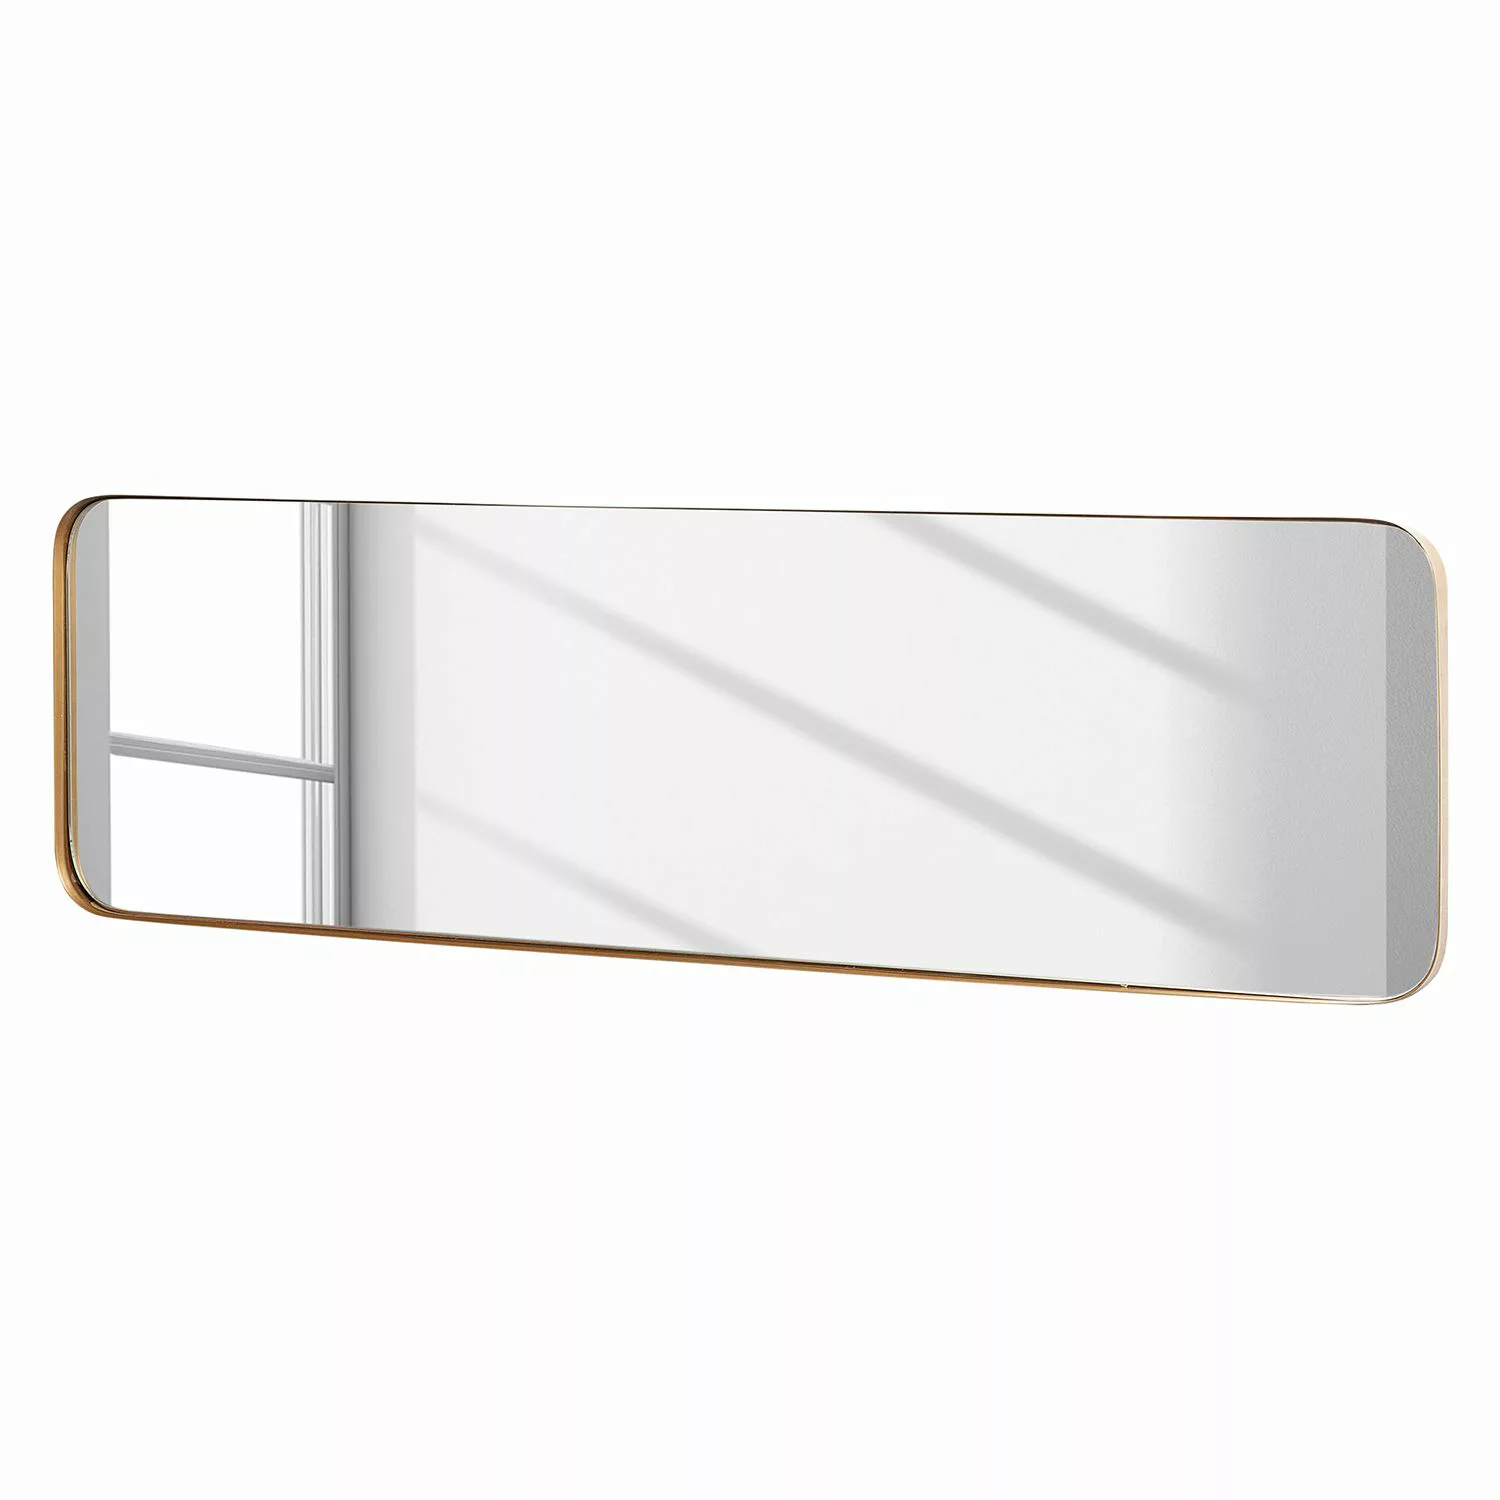 home24 Norrwood Spiegel Ibiracu II Gold Skandi Stahl 30x100x3 cm (BxHxT) günstig online kaufen